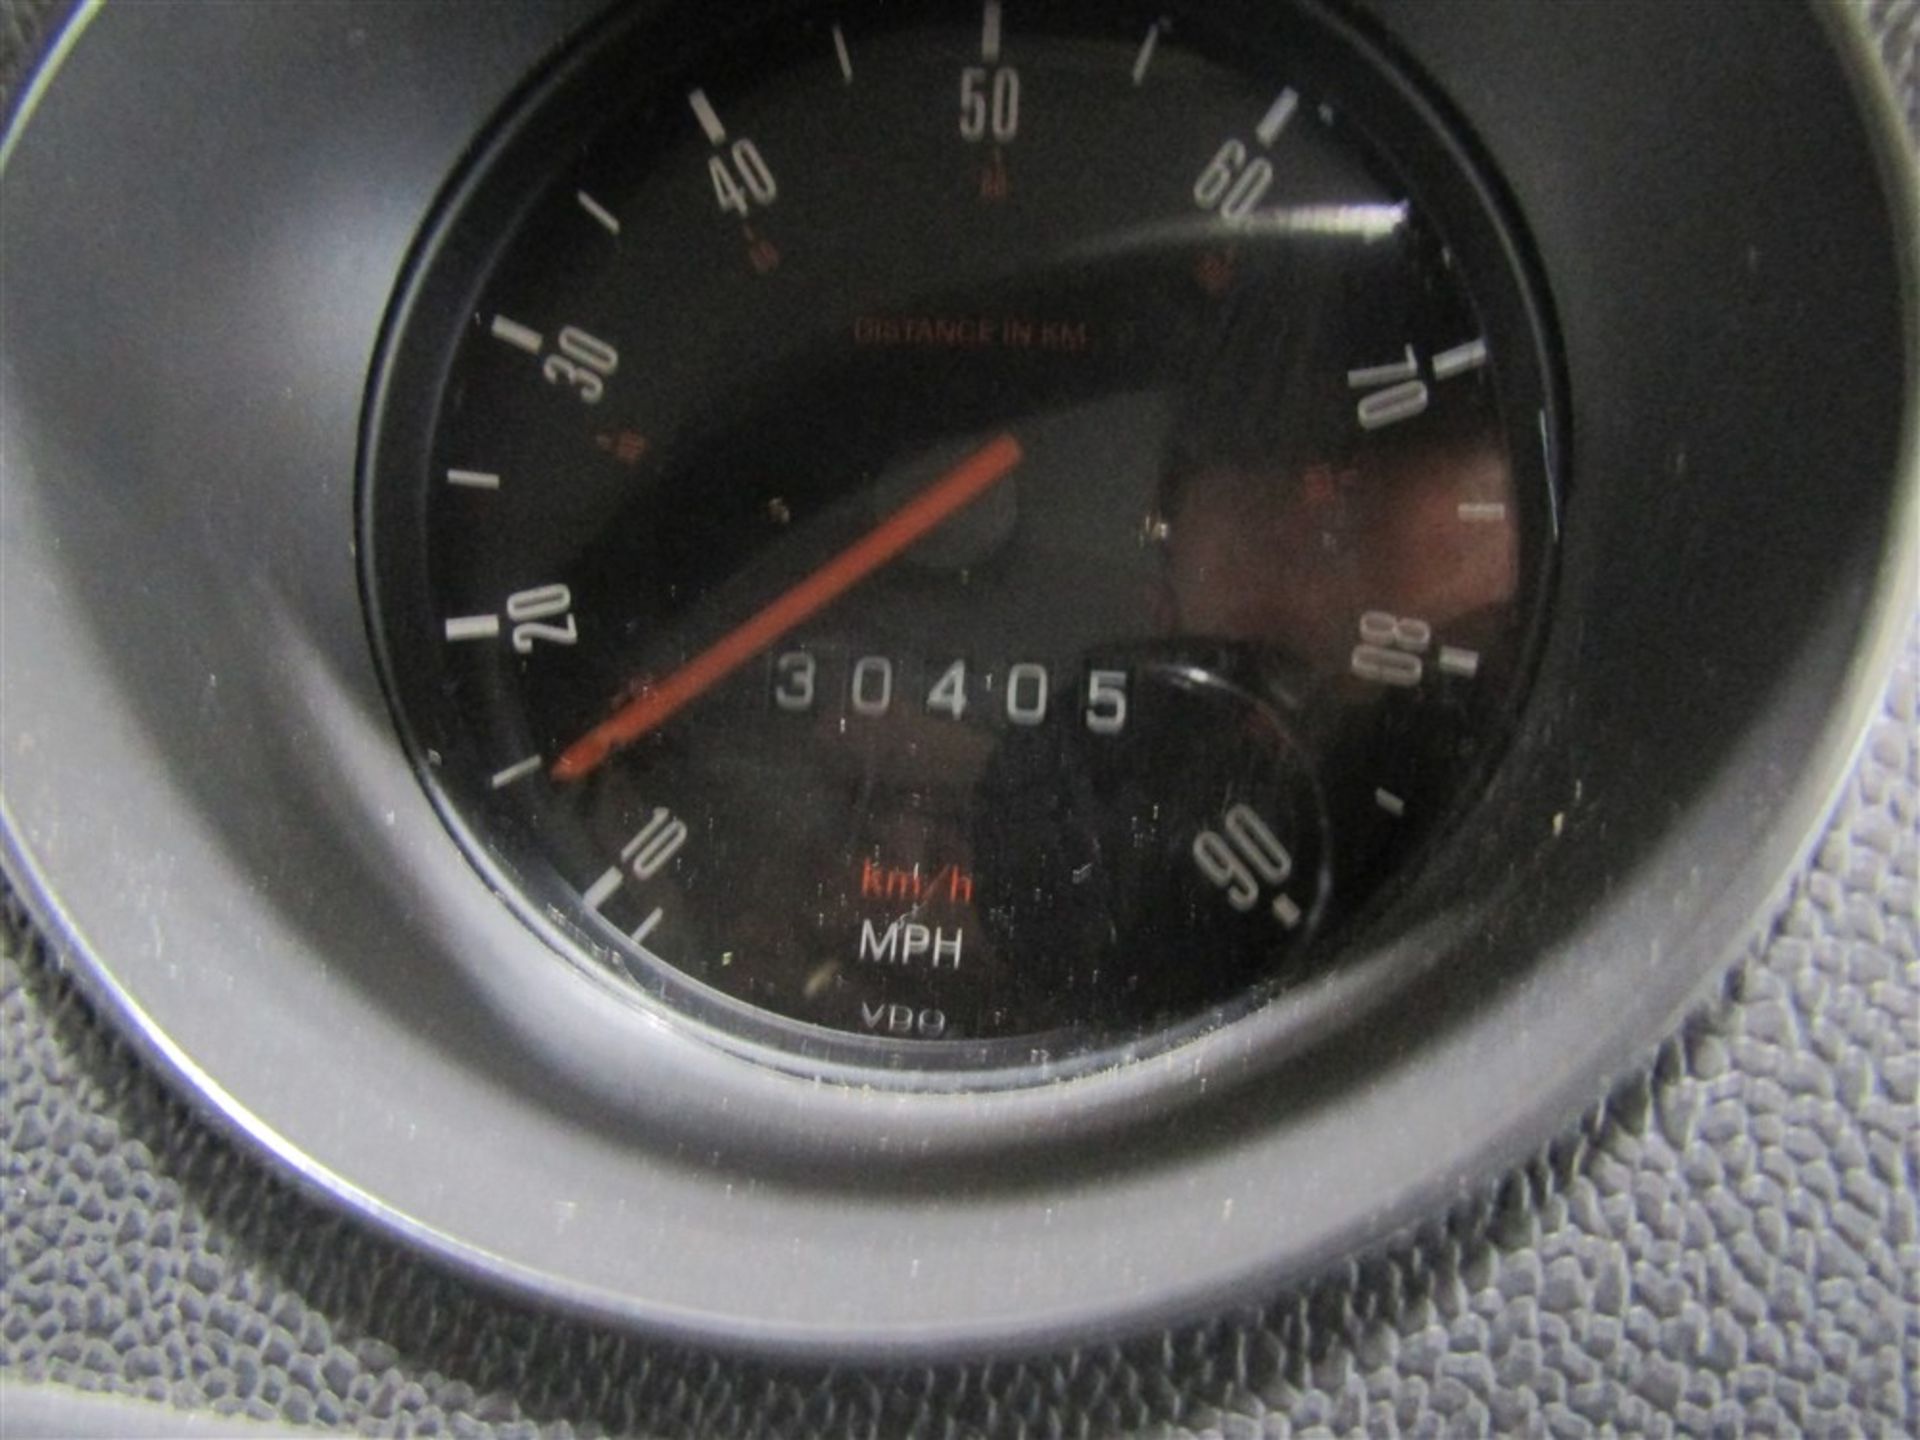 R reg VW T2 CAMPER VAN C/W POP TOP & AWNING, MANUFACTURED 1998, 1ST REG UK 04/98, 30405M, V5 HERE, 5 - Image 7 of 7